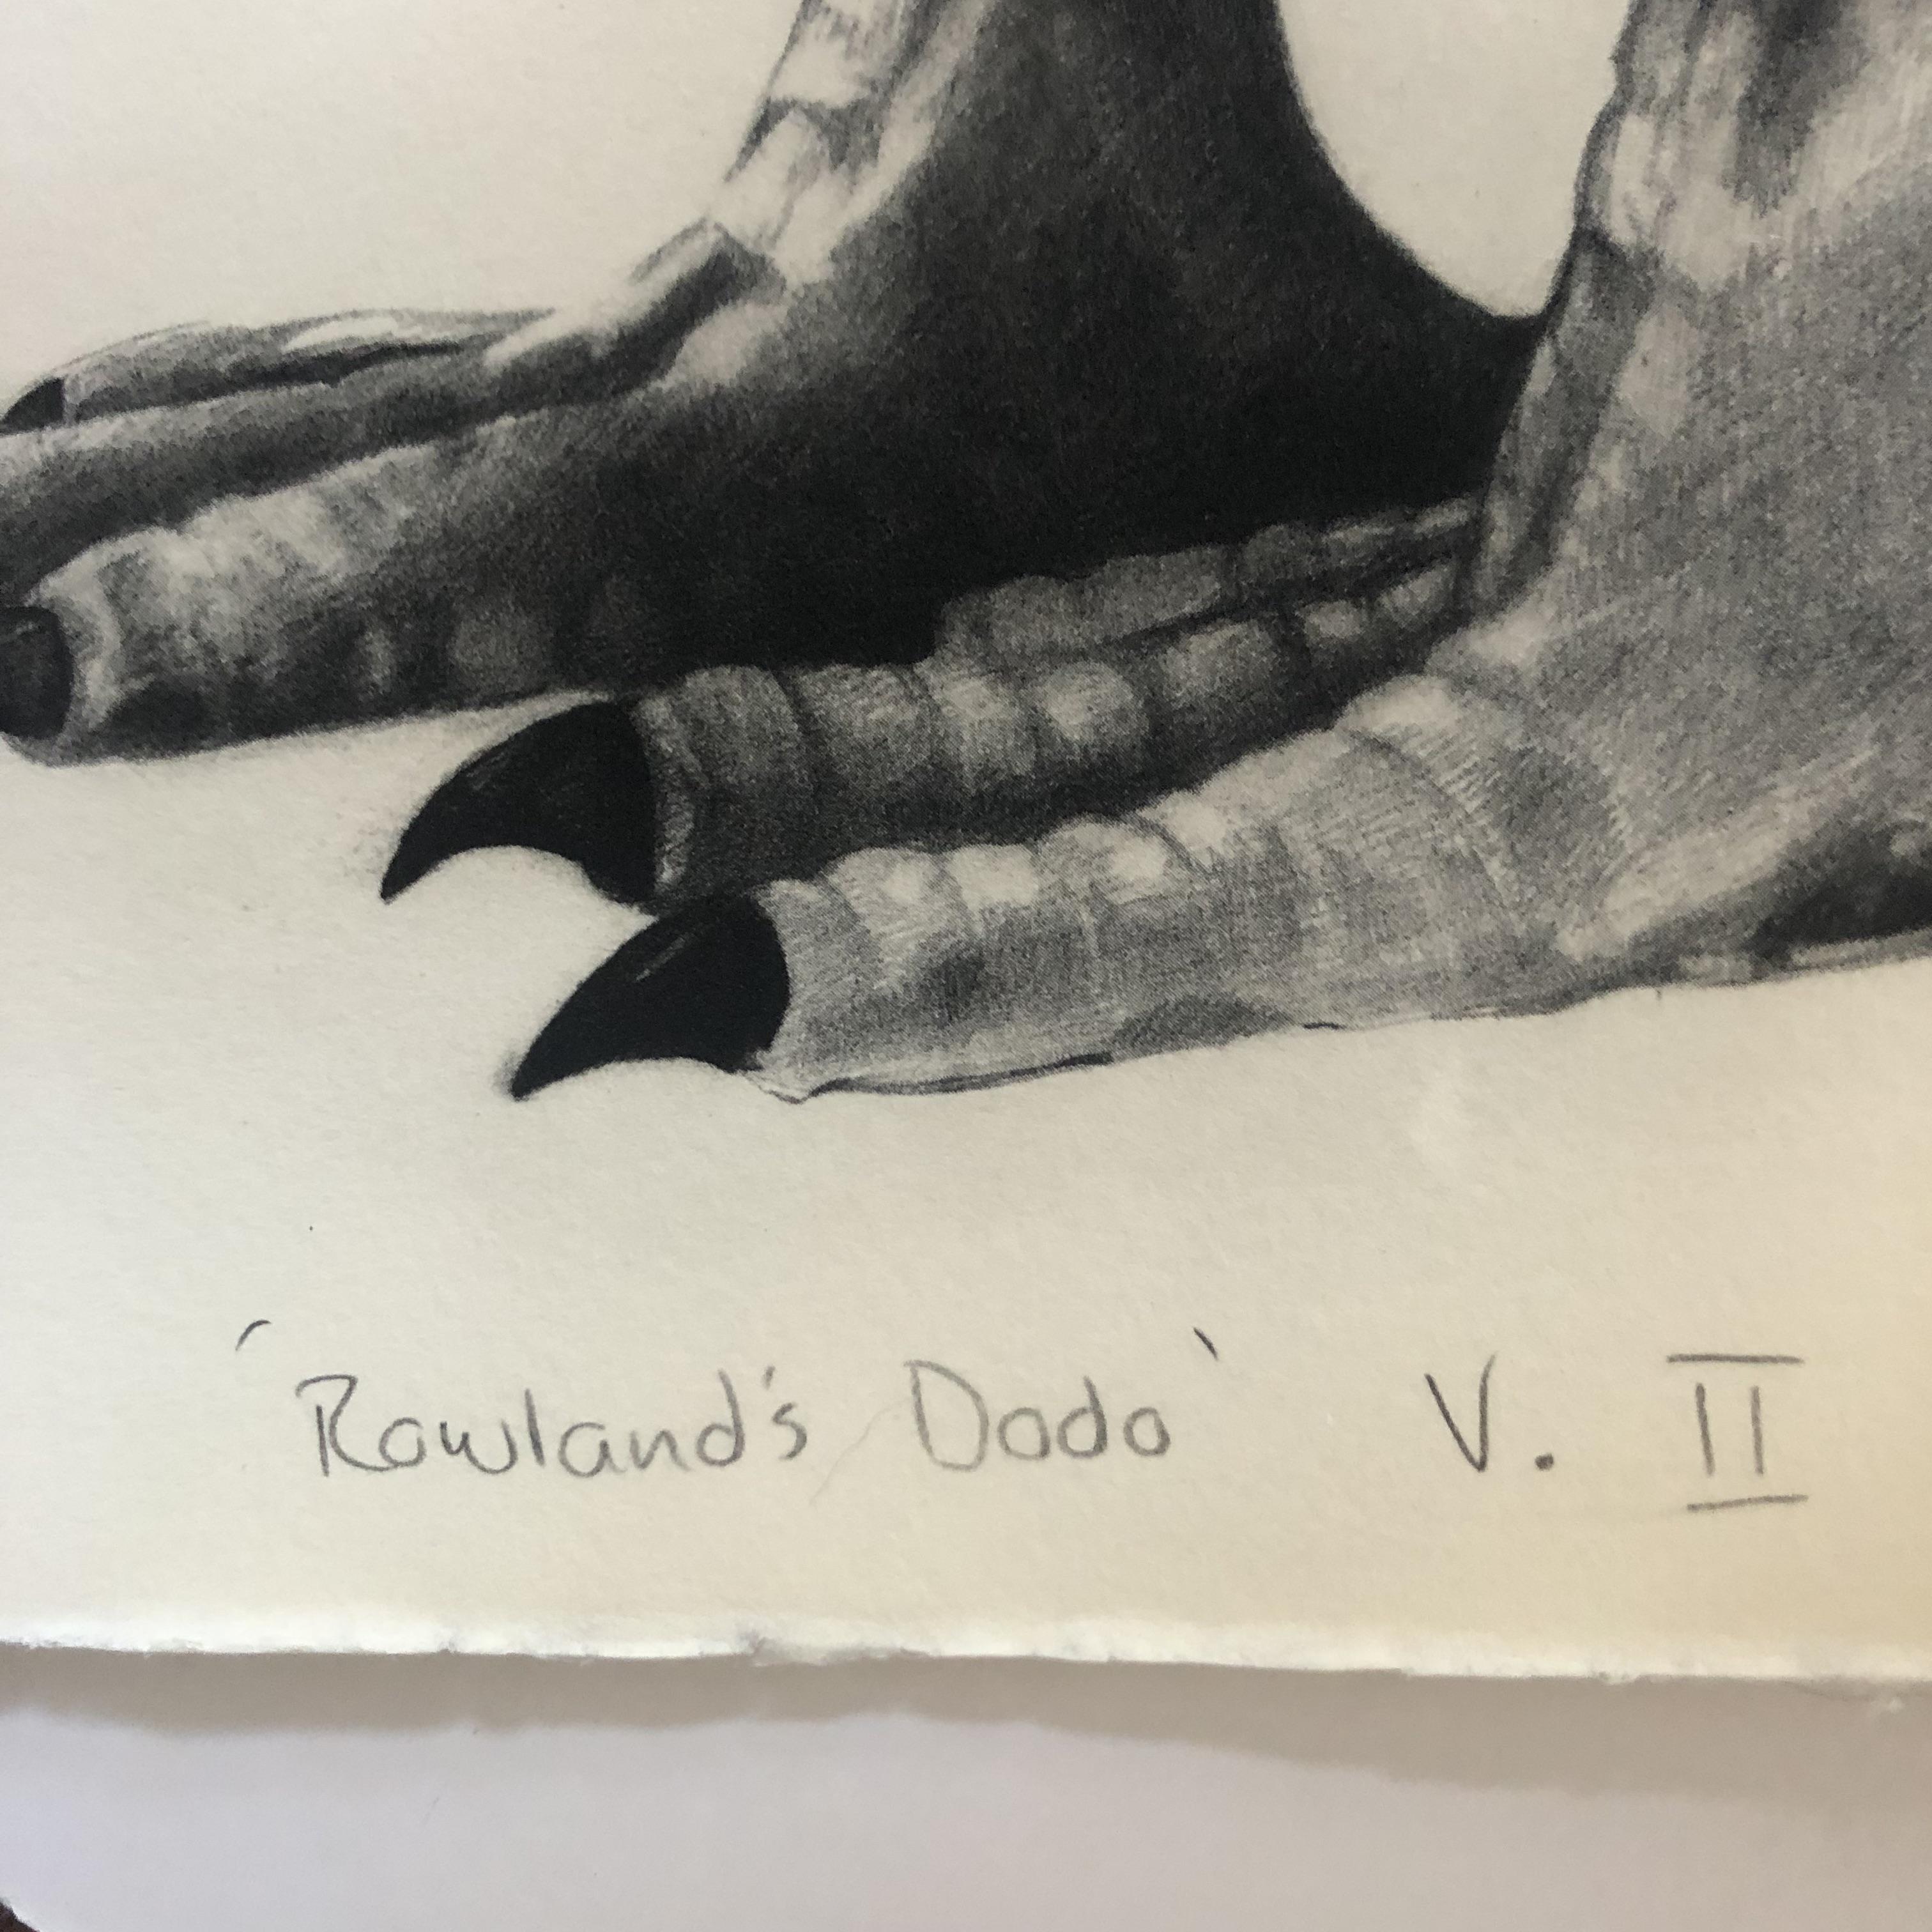 Rowland's Dodo (Version II) est un tirage photopolymère en édition limitée sur papier Somerset blanc doux, réalisé par Tammy Mackay. L'impression en noir et blanc est très détaillée et pourrait facilement être confondue avec un